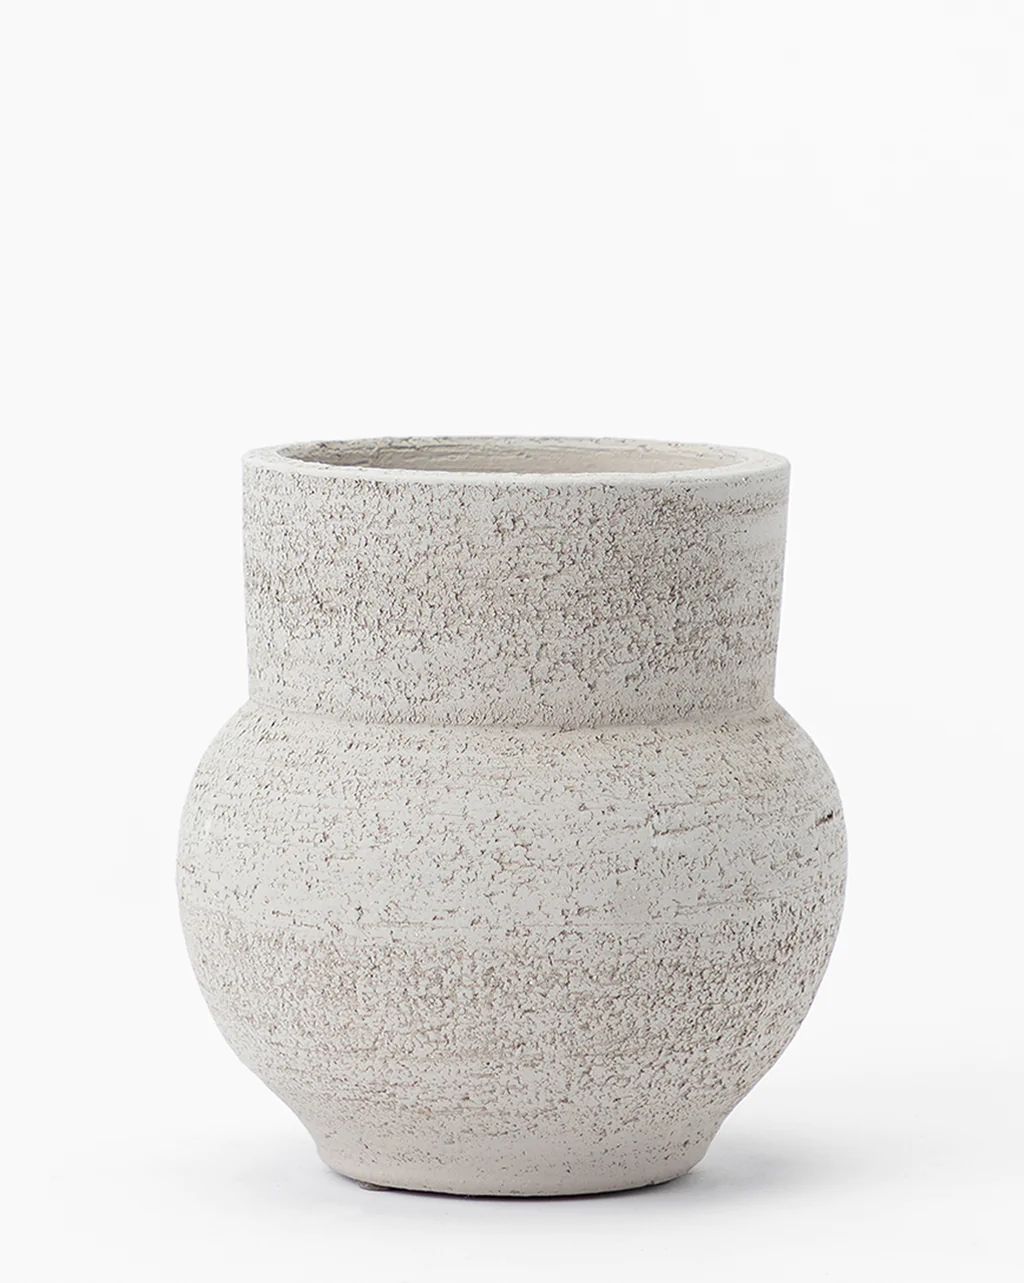 Edinger Vase | McGee & Co.